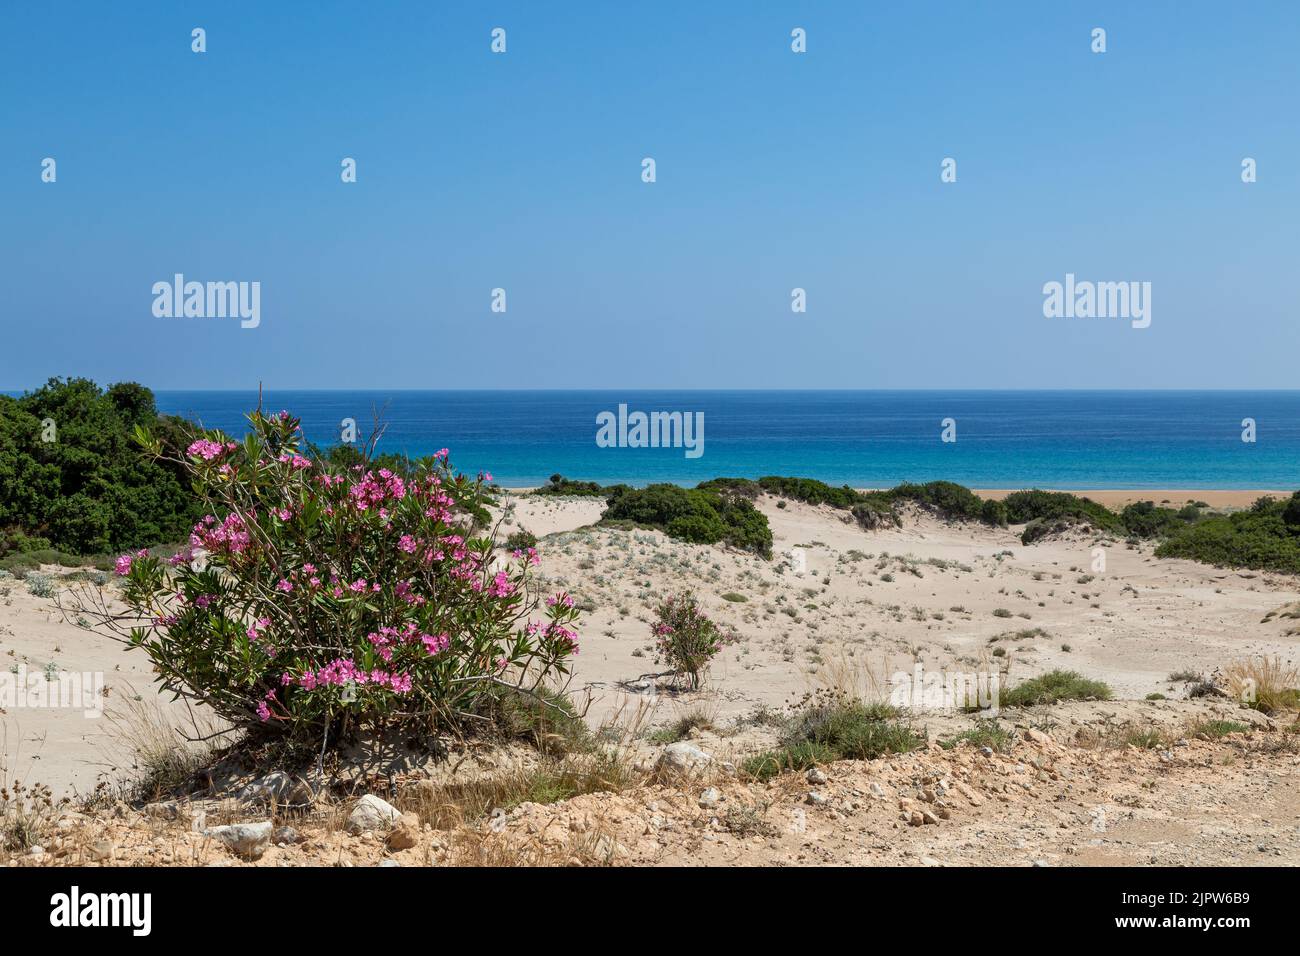 Un arbusto de adelfa rosa que crece en las dunas de arena, en la playa dorada a lo largo de la península de Karpass en la isla de Chipre Foto de stock